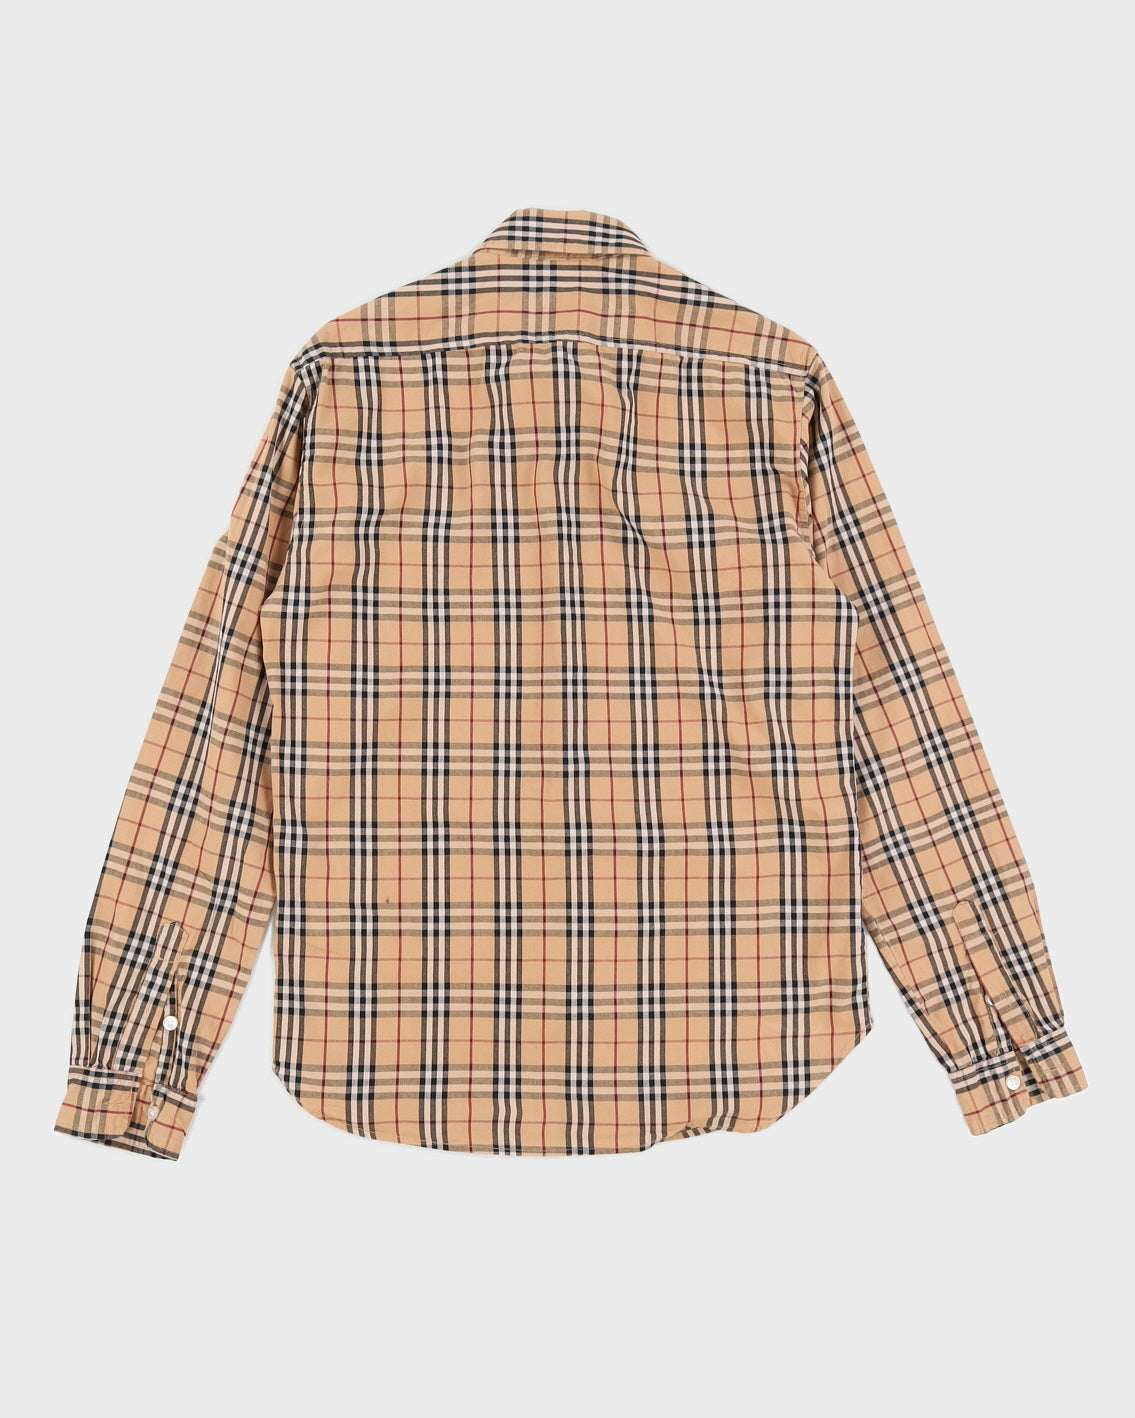 Burberry Signature Plaid Men's Button-up Shirt - S